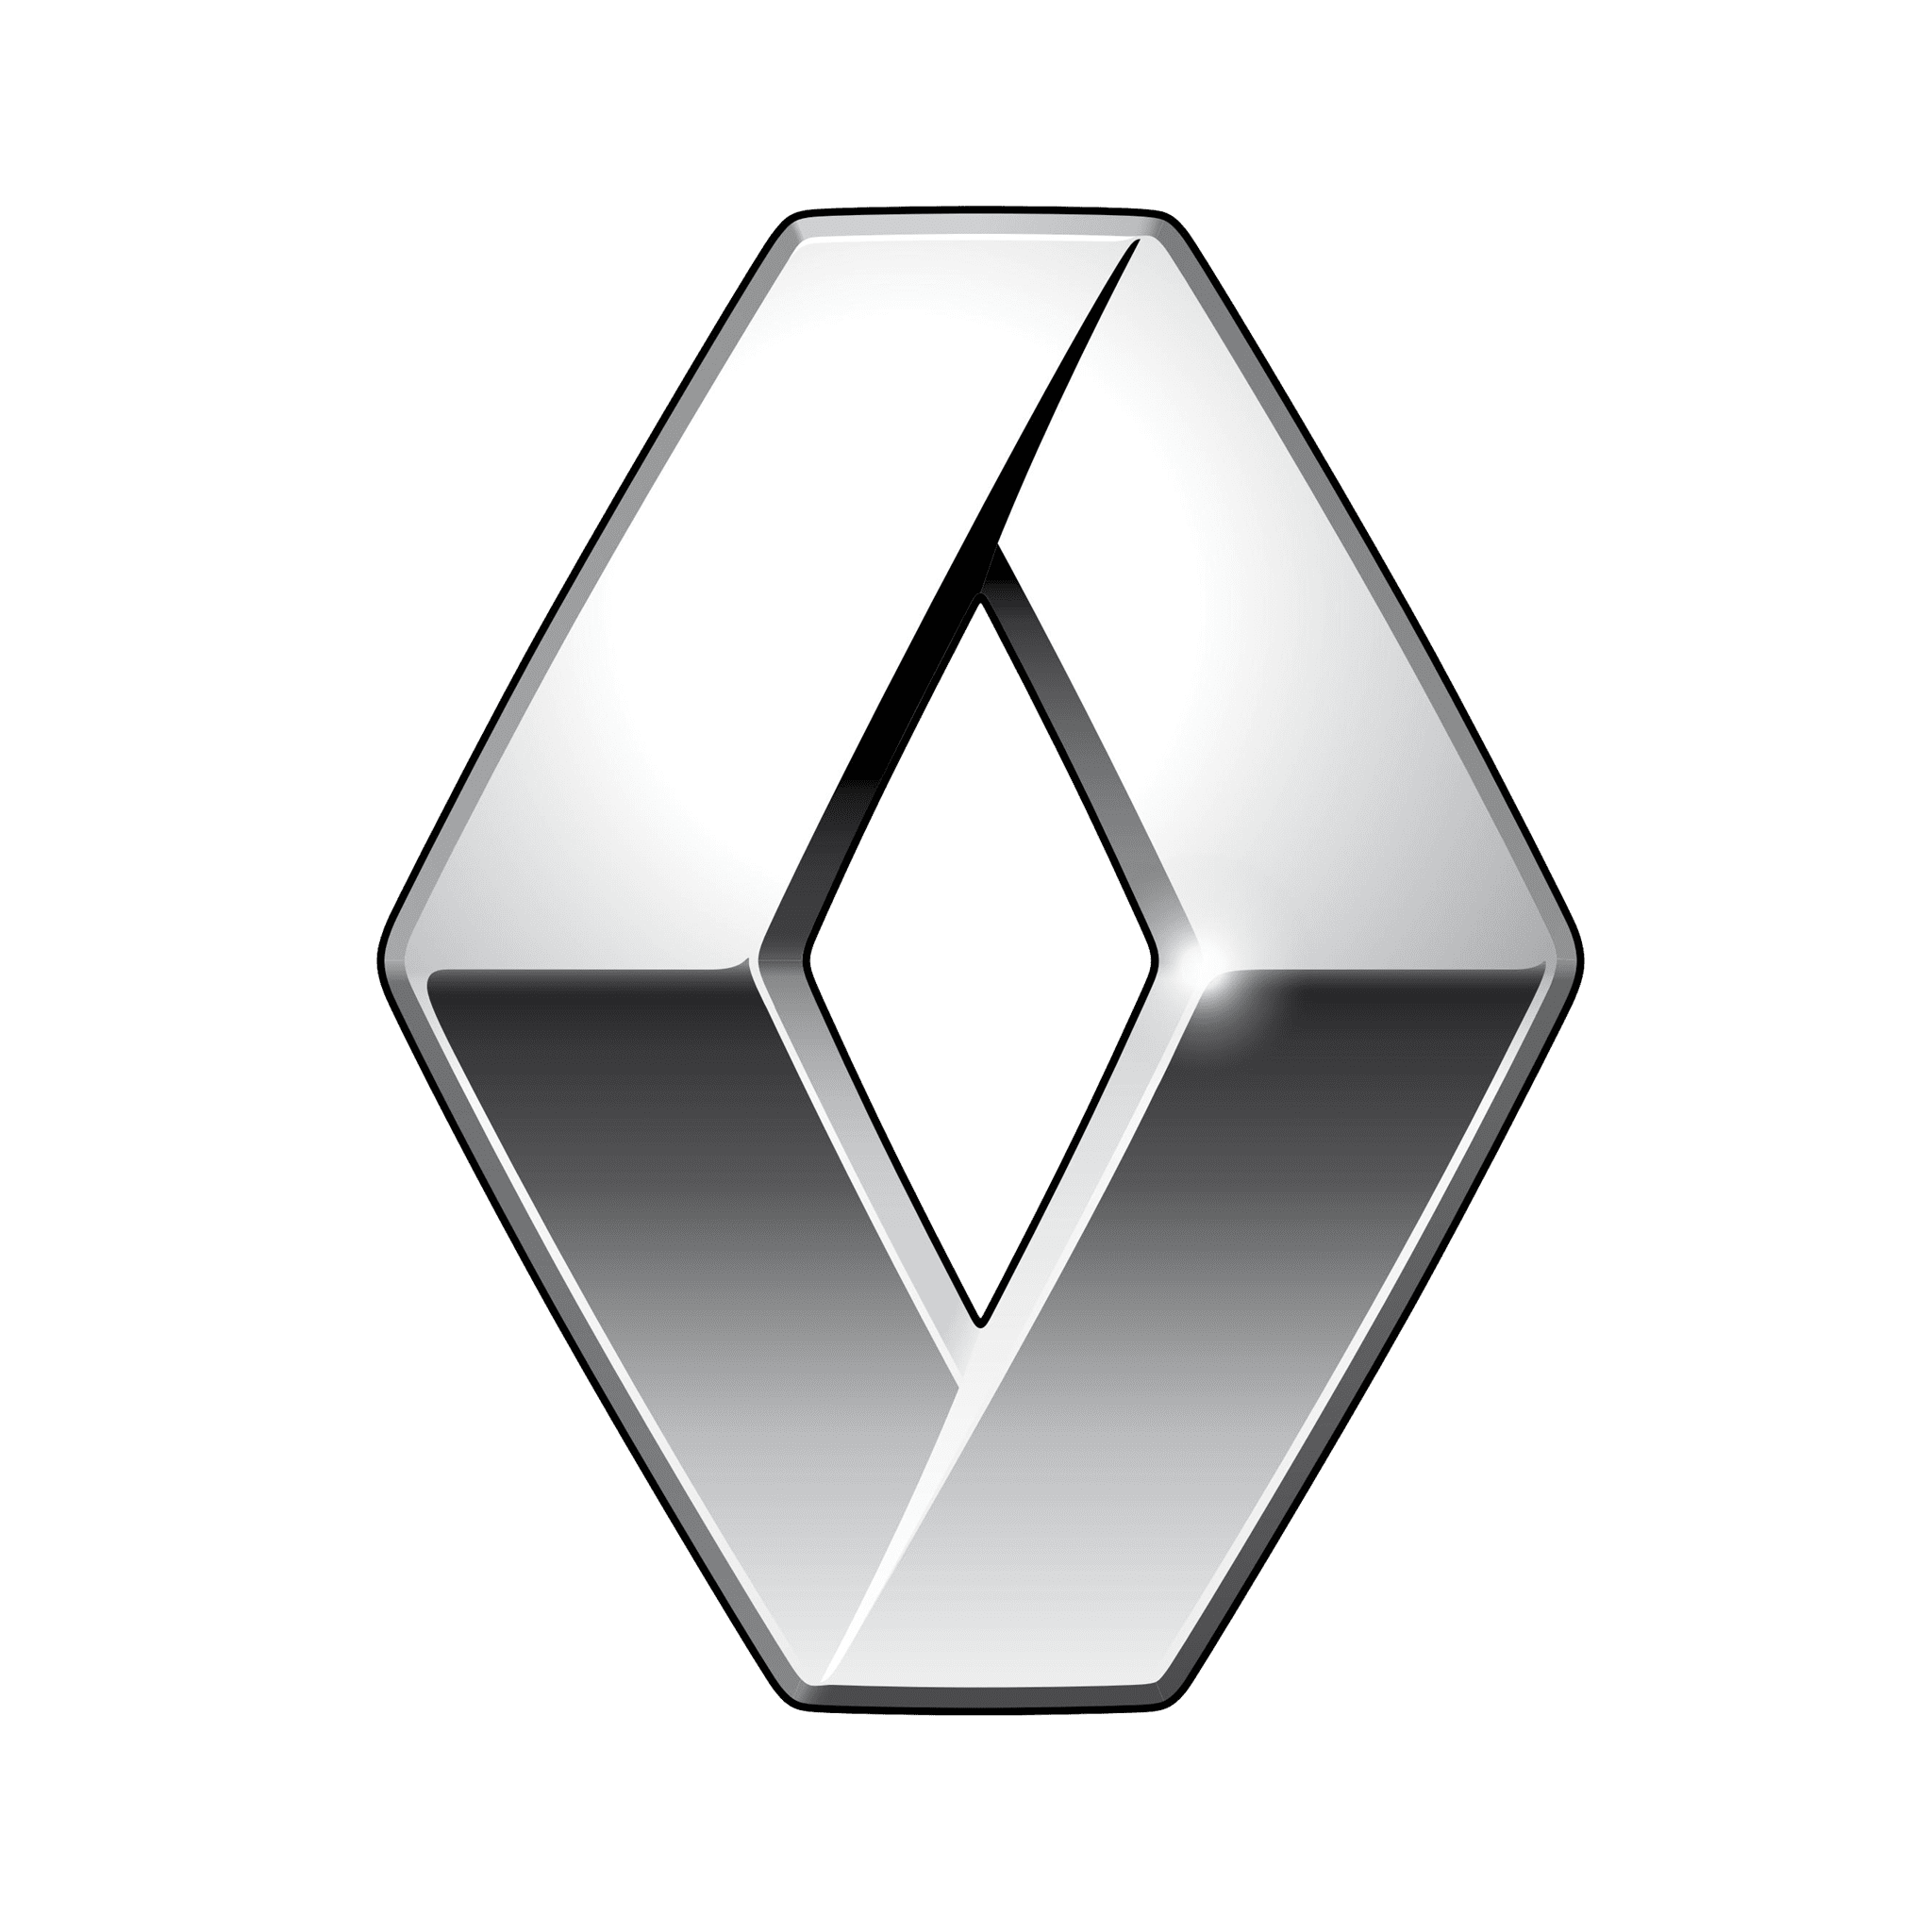 Renault Rental in Dubai